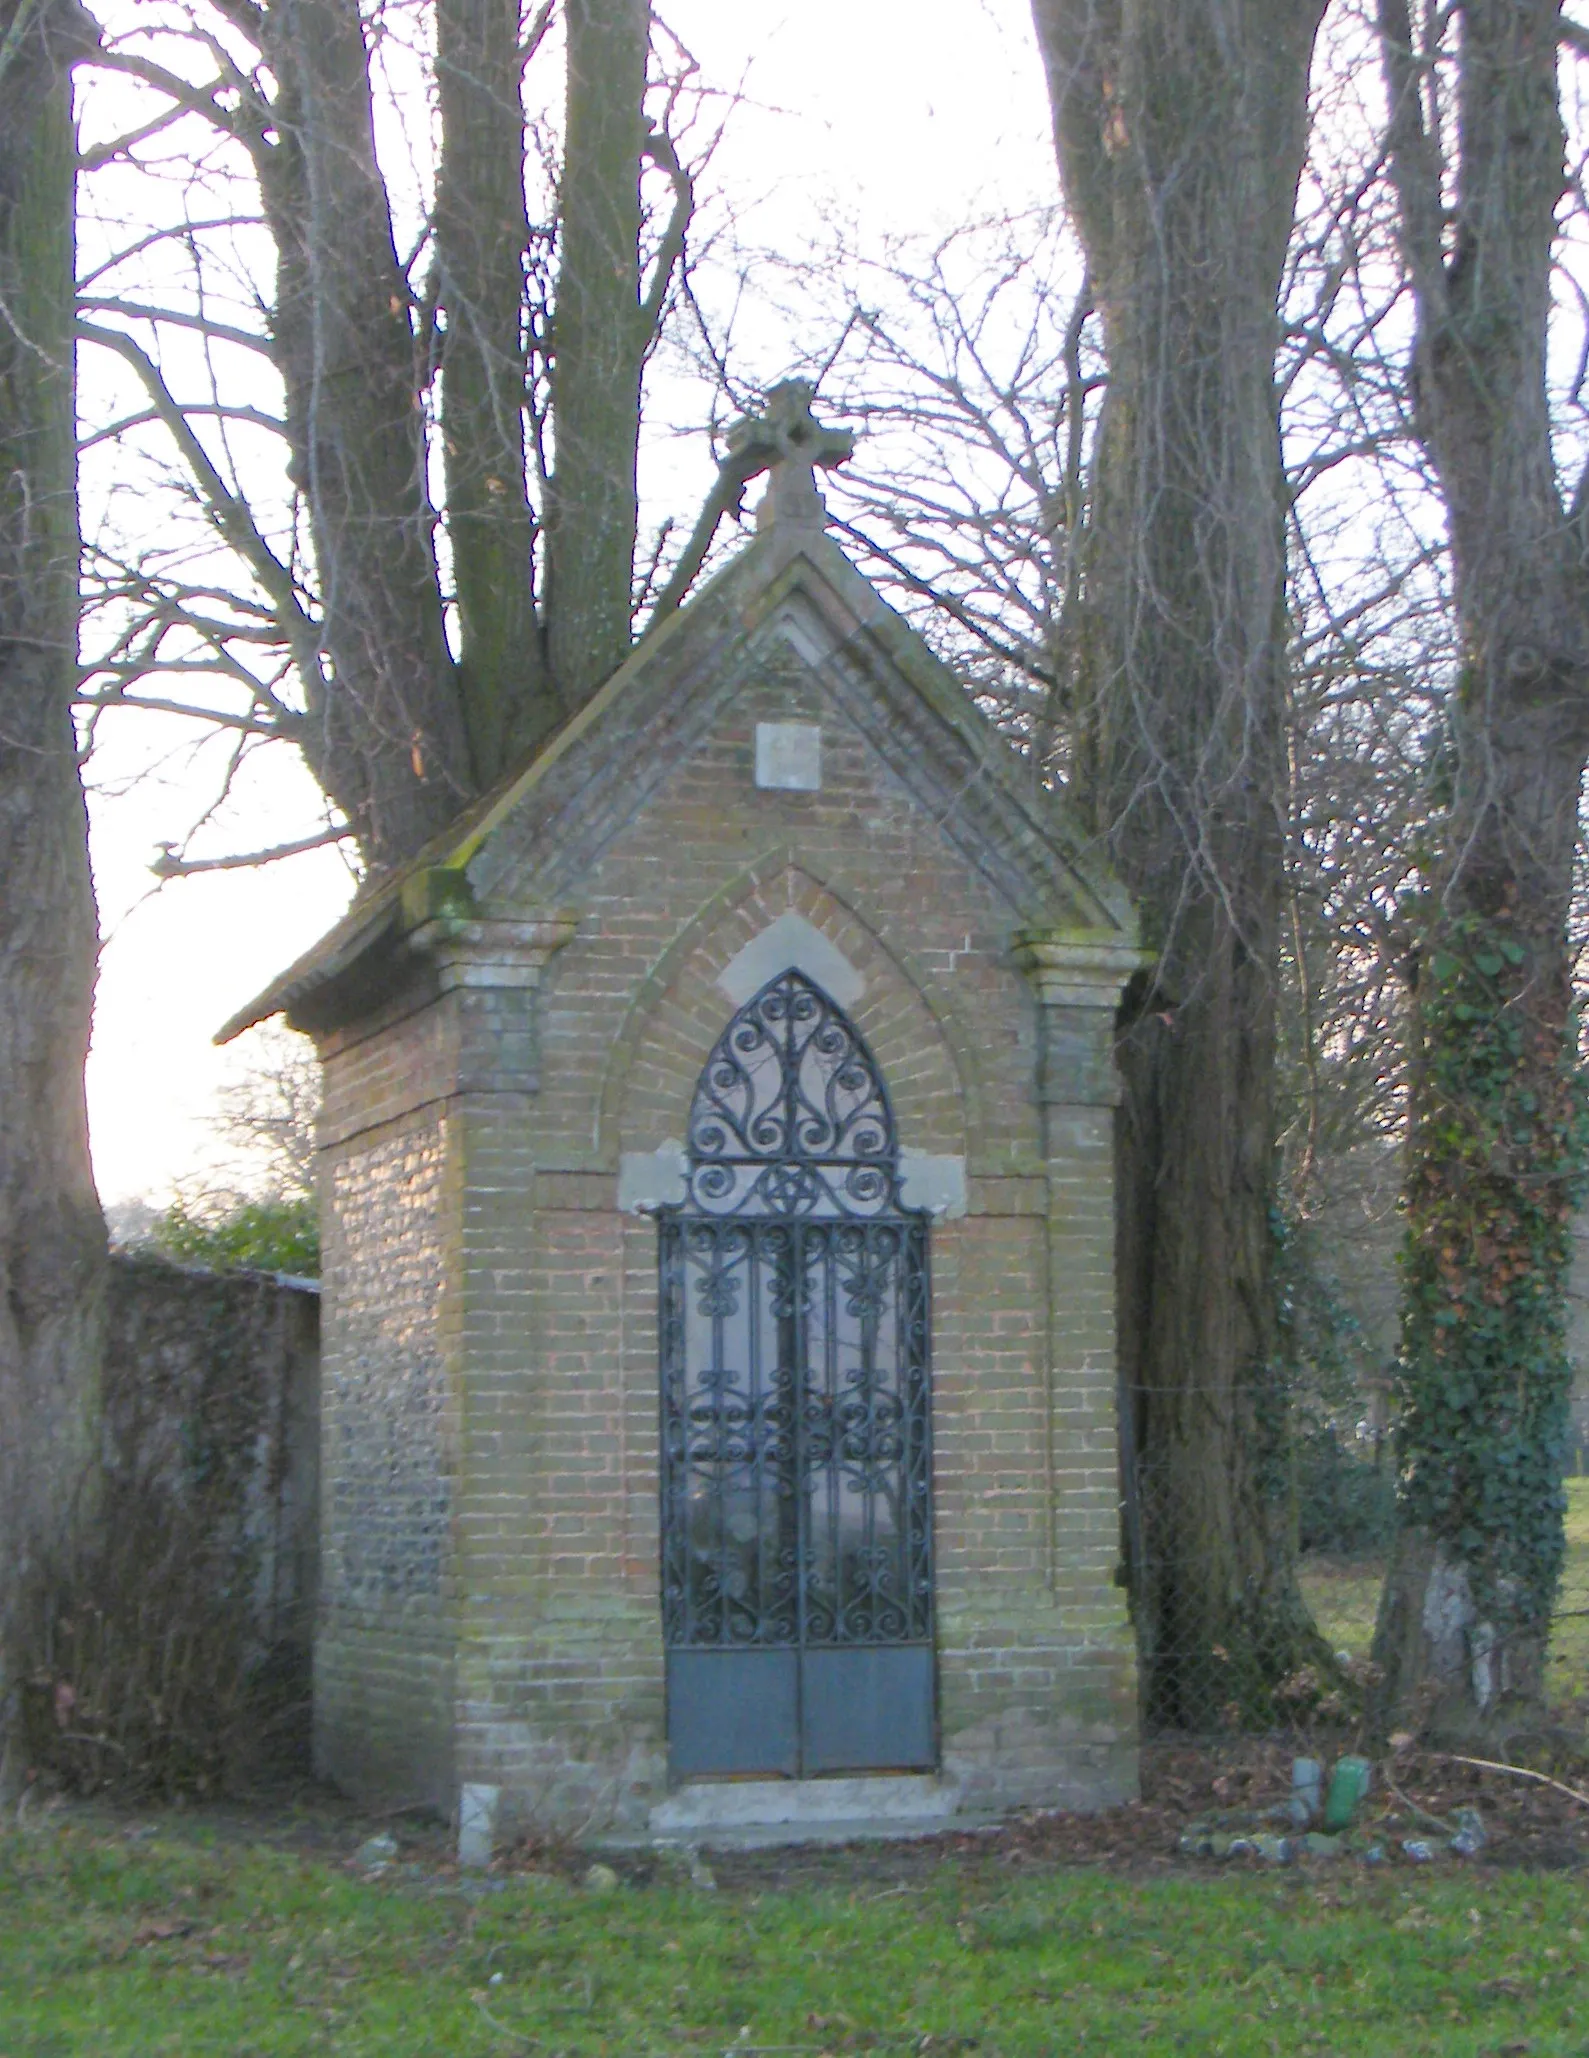 Photo showing: Le Titre (Somme), chapelle (oratoire) "BG 1961" (Bricheux-Gomel, achetée en 1961), chemin des pèlerins.